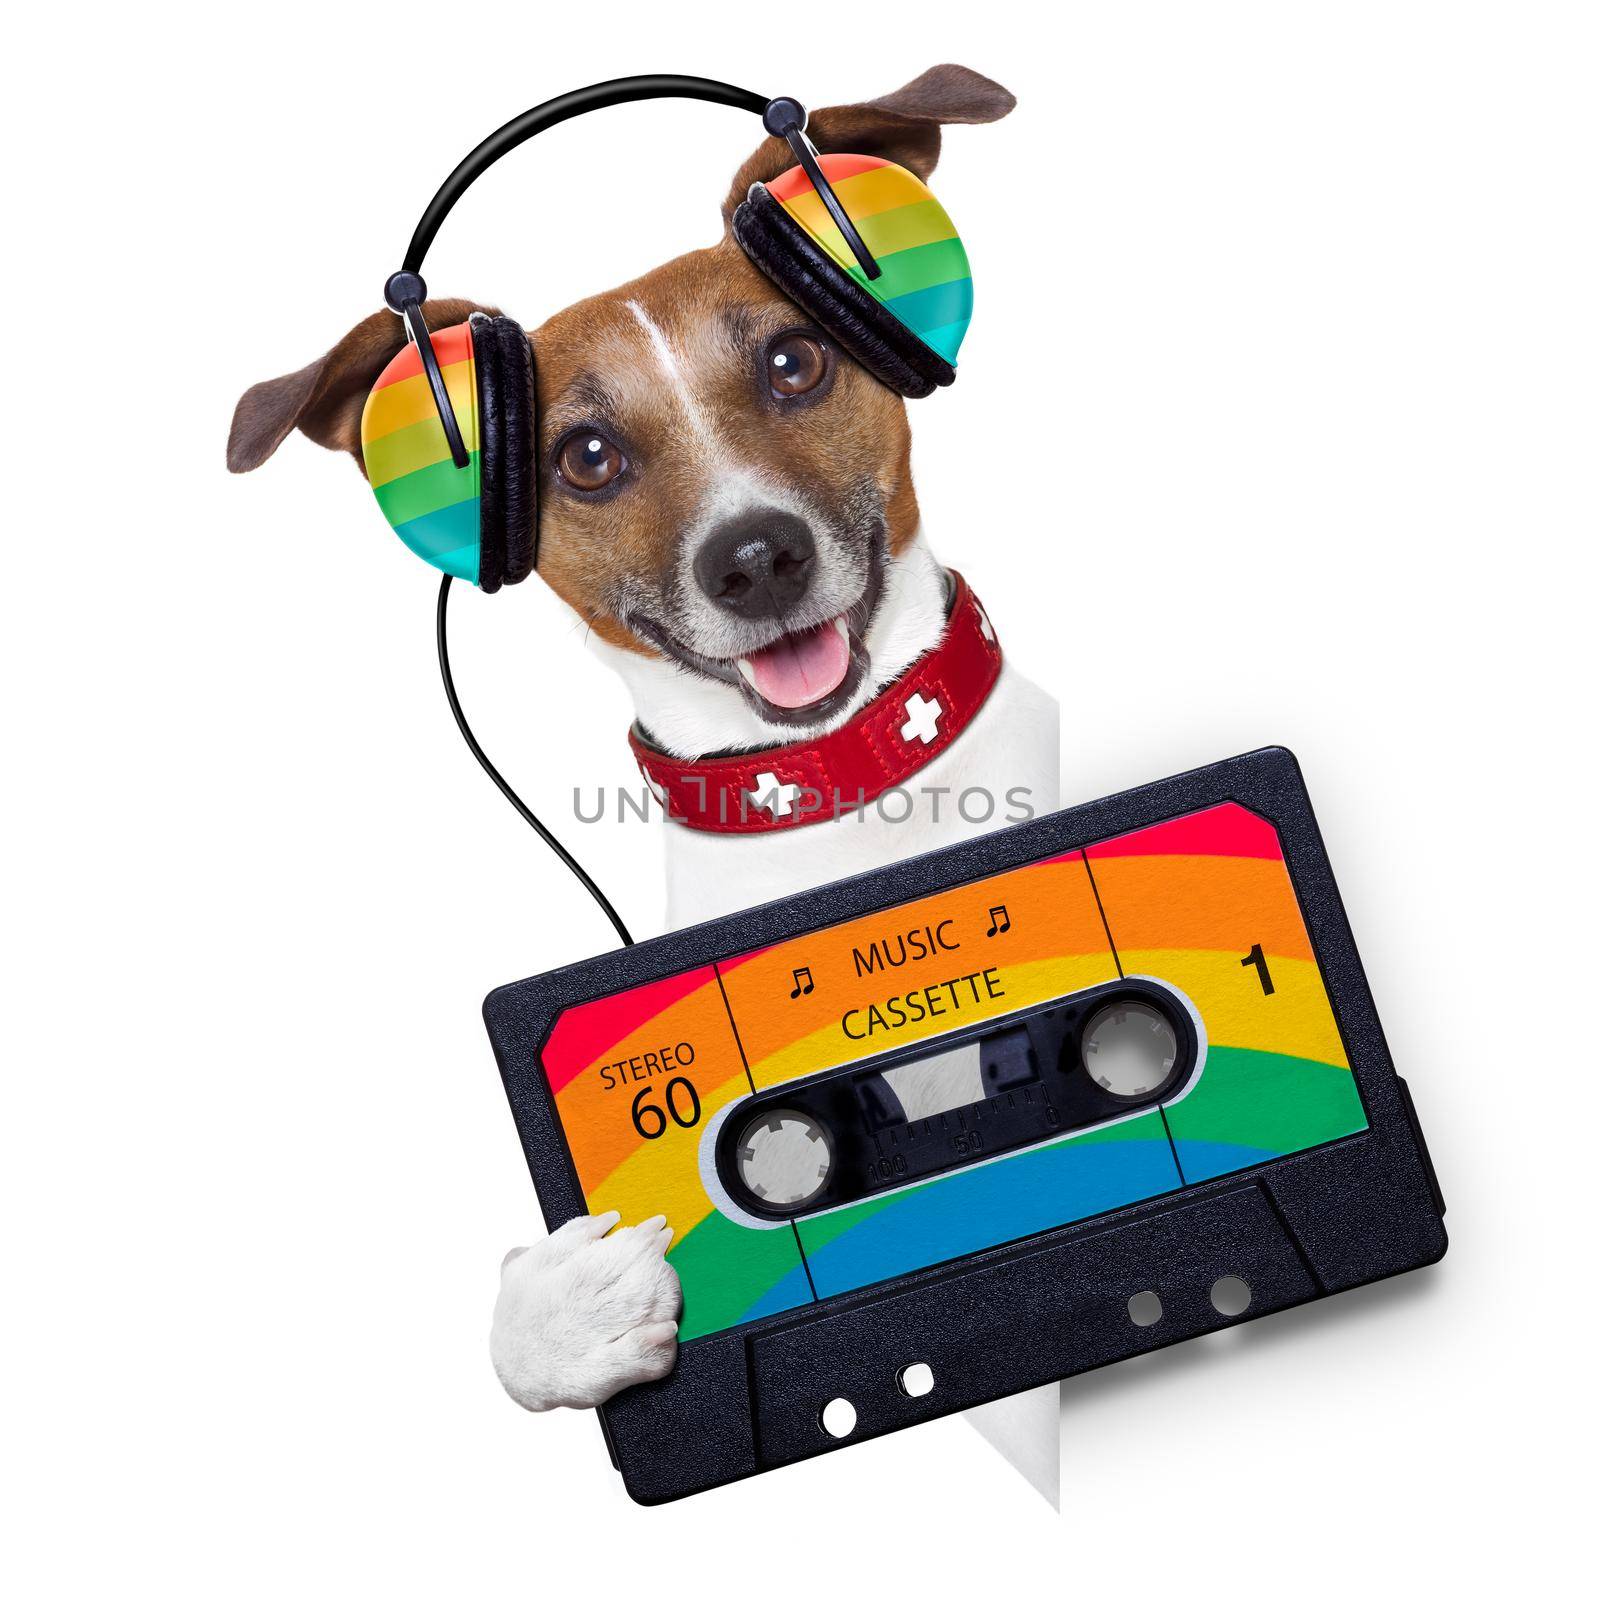 music dog by Brosch